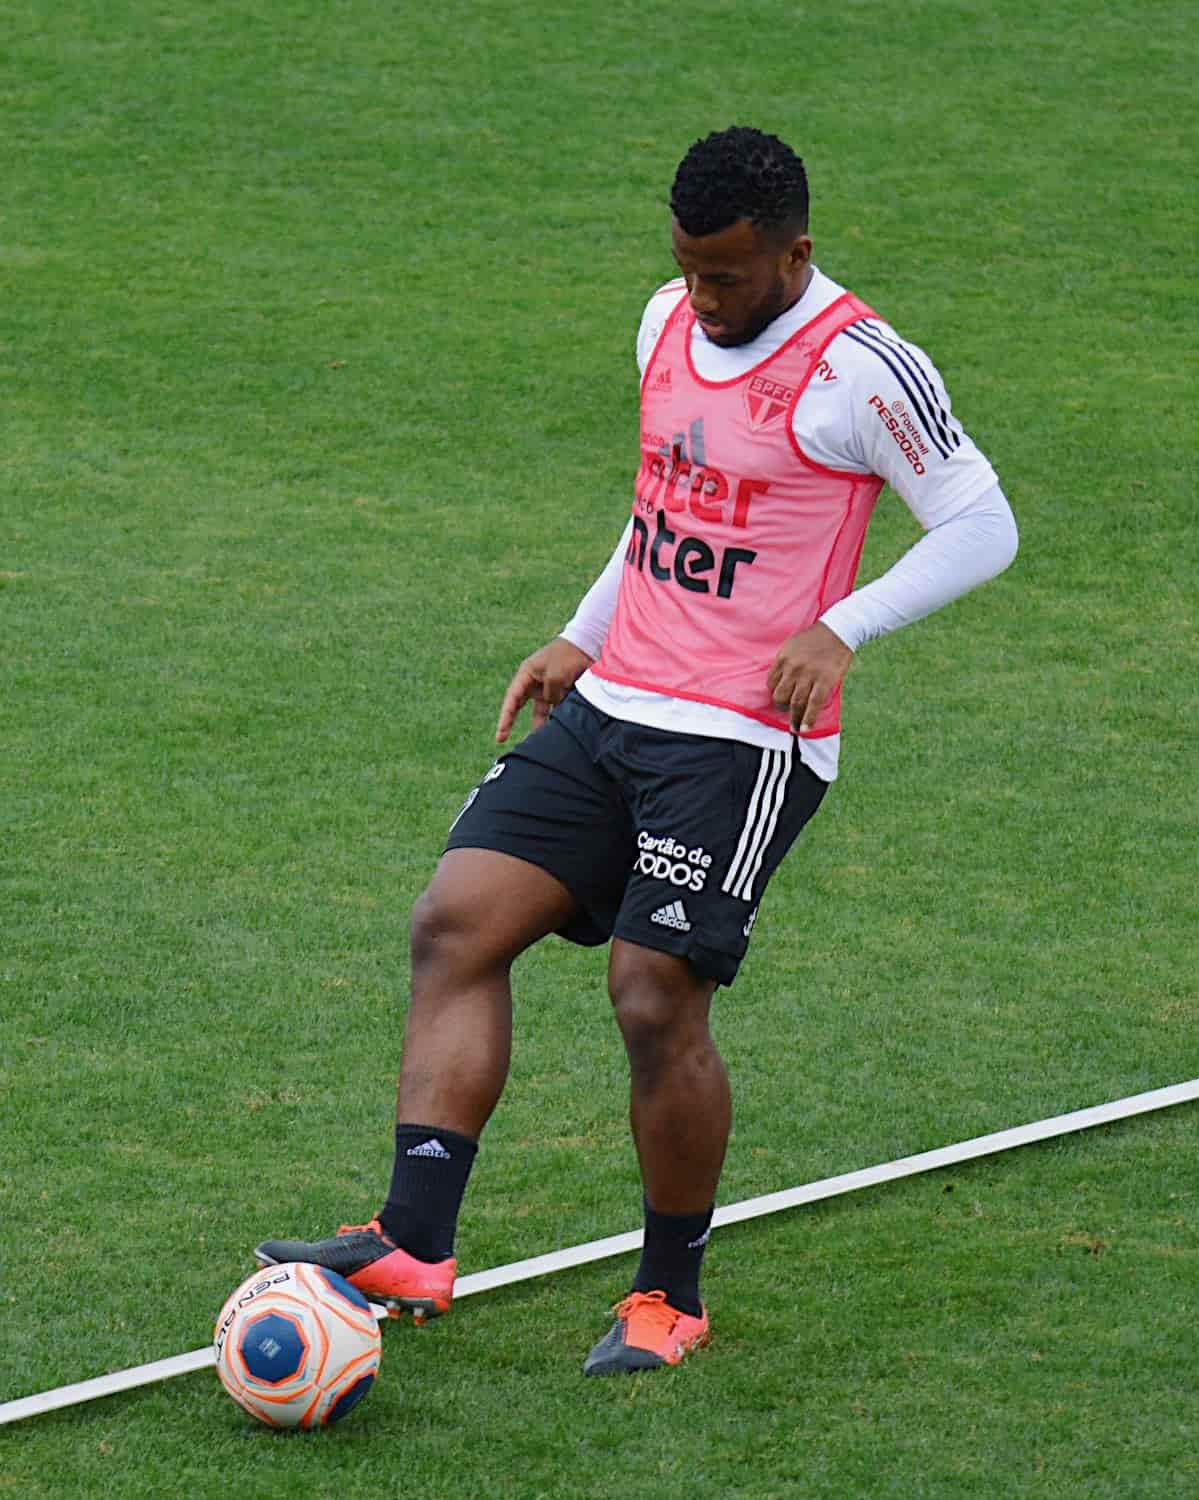 FECHADO - O São Paulo decidiu renovar o contrato do volante Luan por mais um ano, agora até dezembro de 2023. O jogador foi alvo de especulações de transferências no último mês.